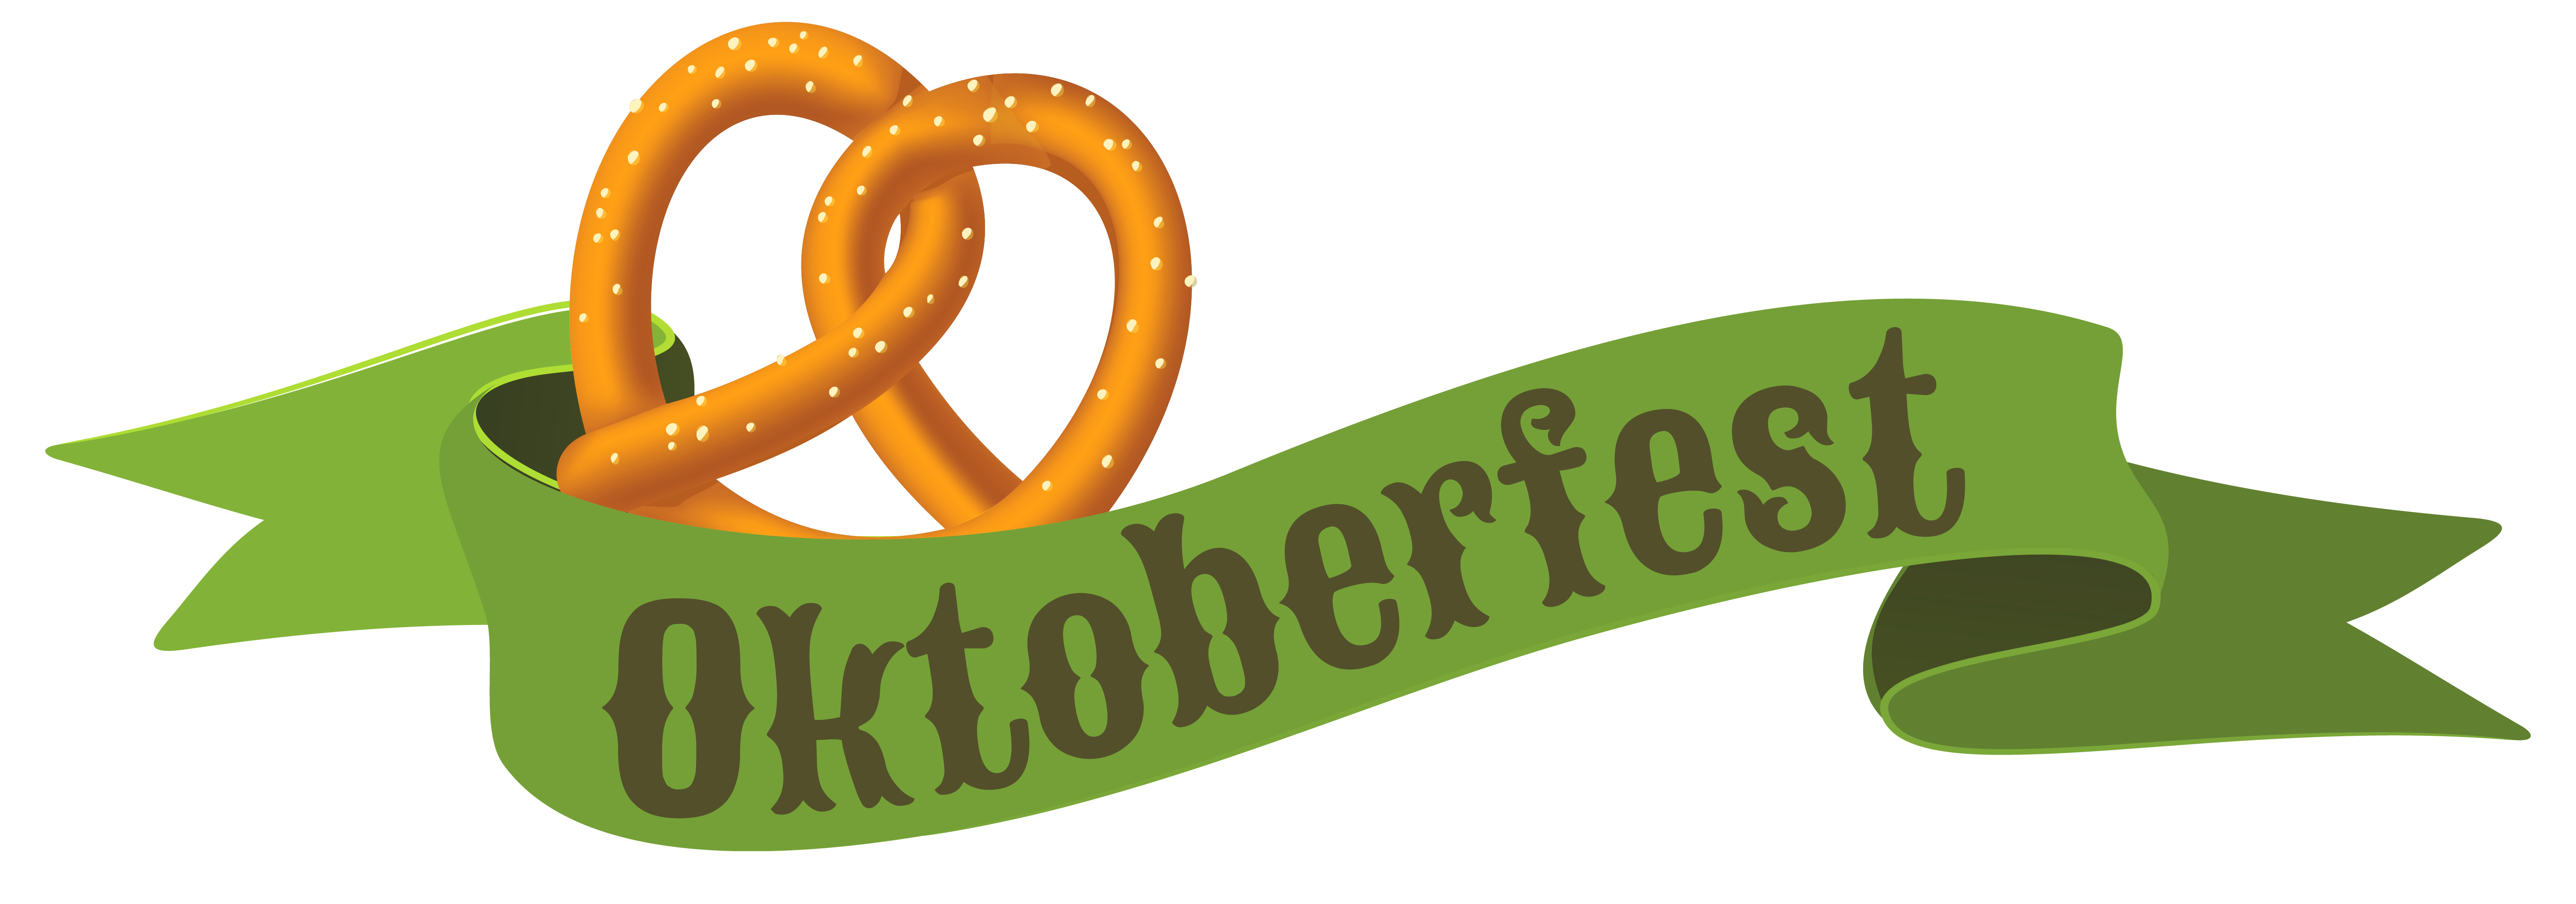 Oktoberfest green png image. Kids clipart banner